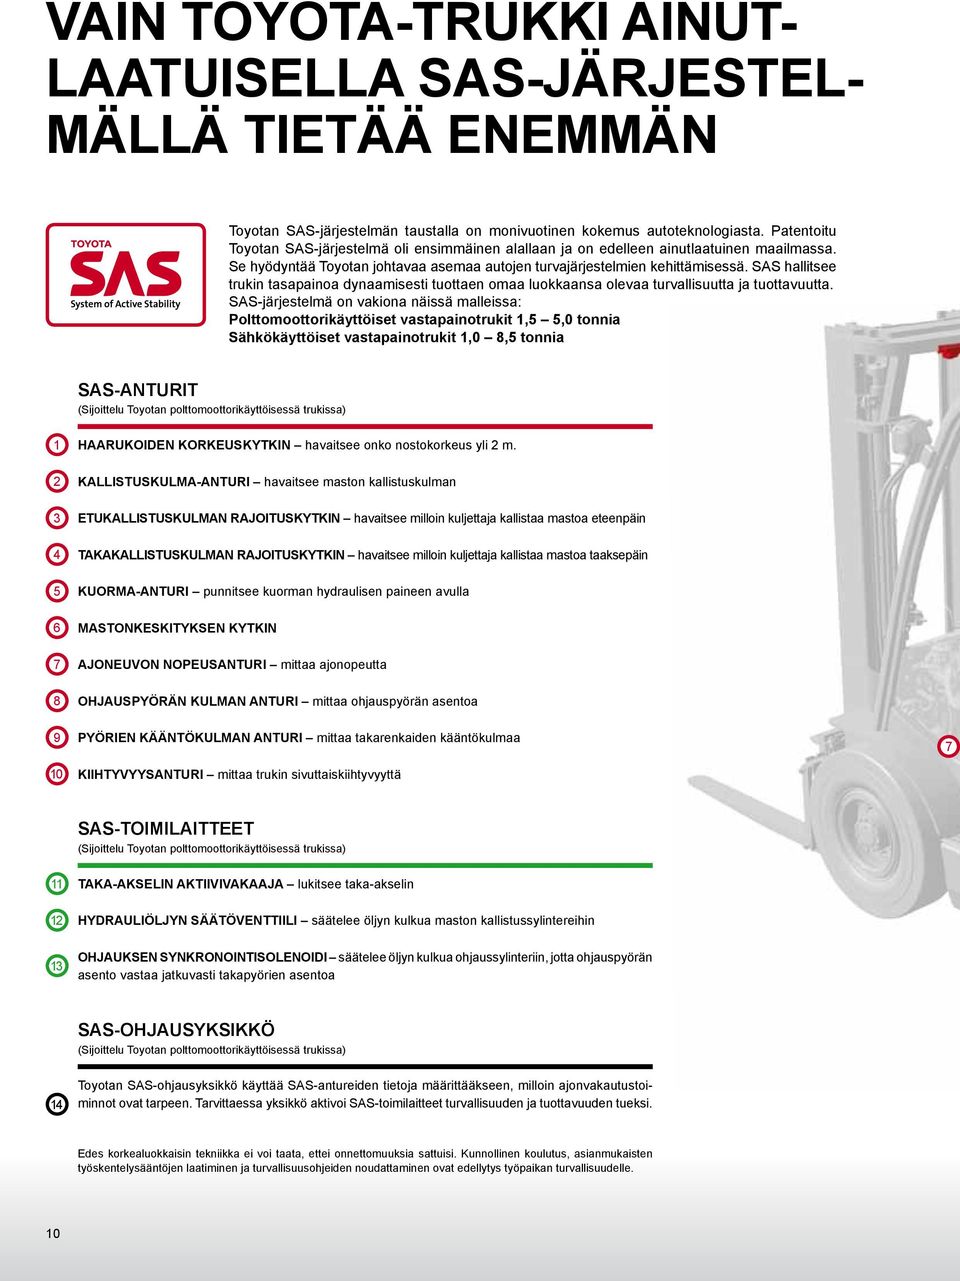 SAS hallitsee trukin tasapainoa dynaamisesti tuottaen omaa luokkaansa olevaa turvallisuutta ja tuottavuutta.